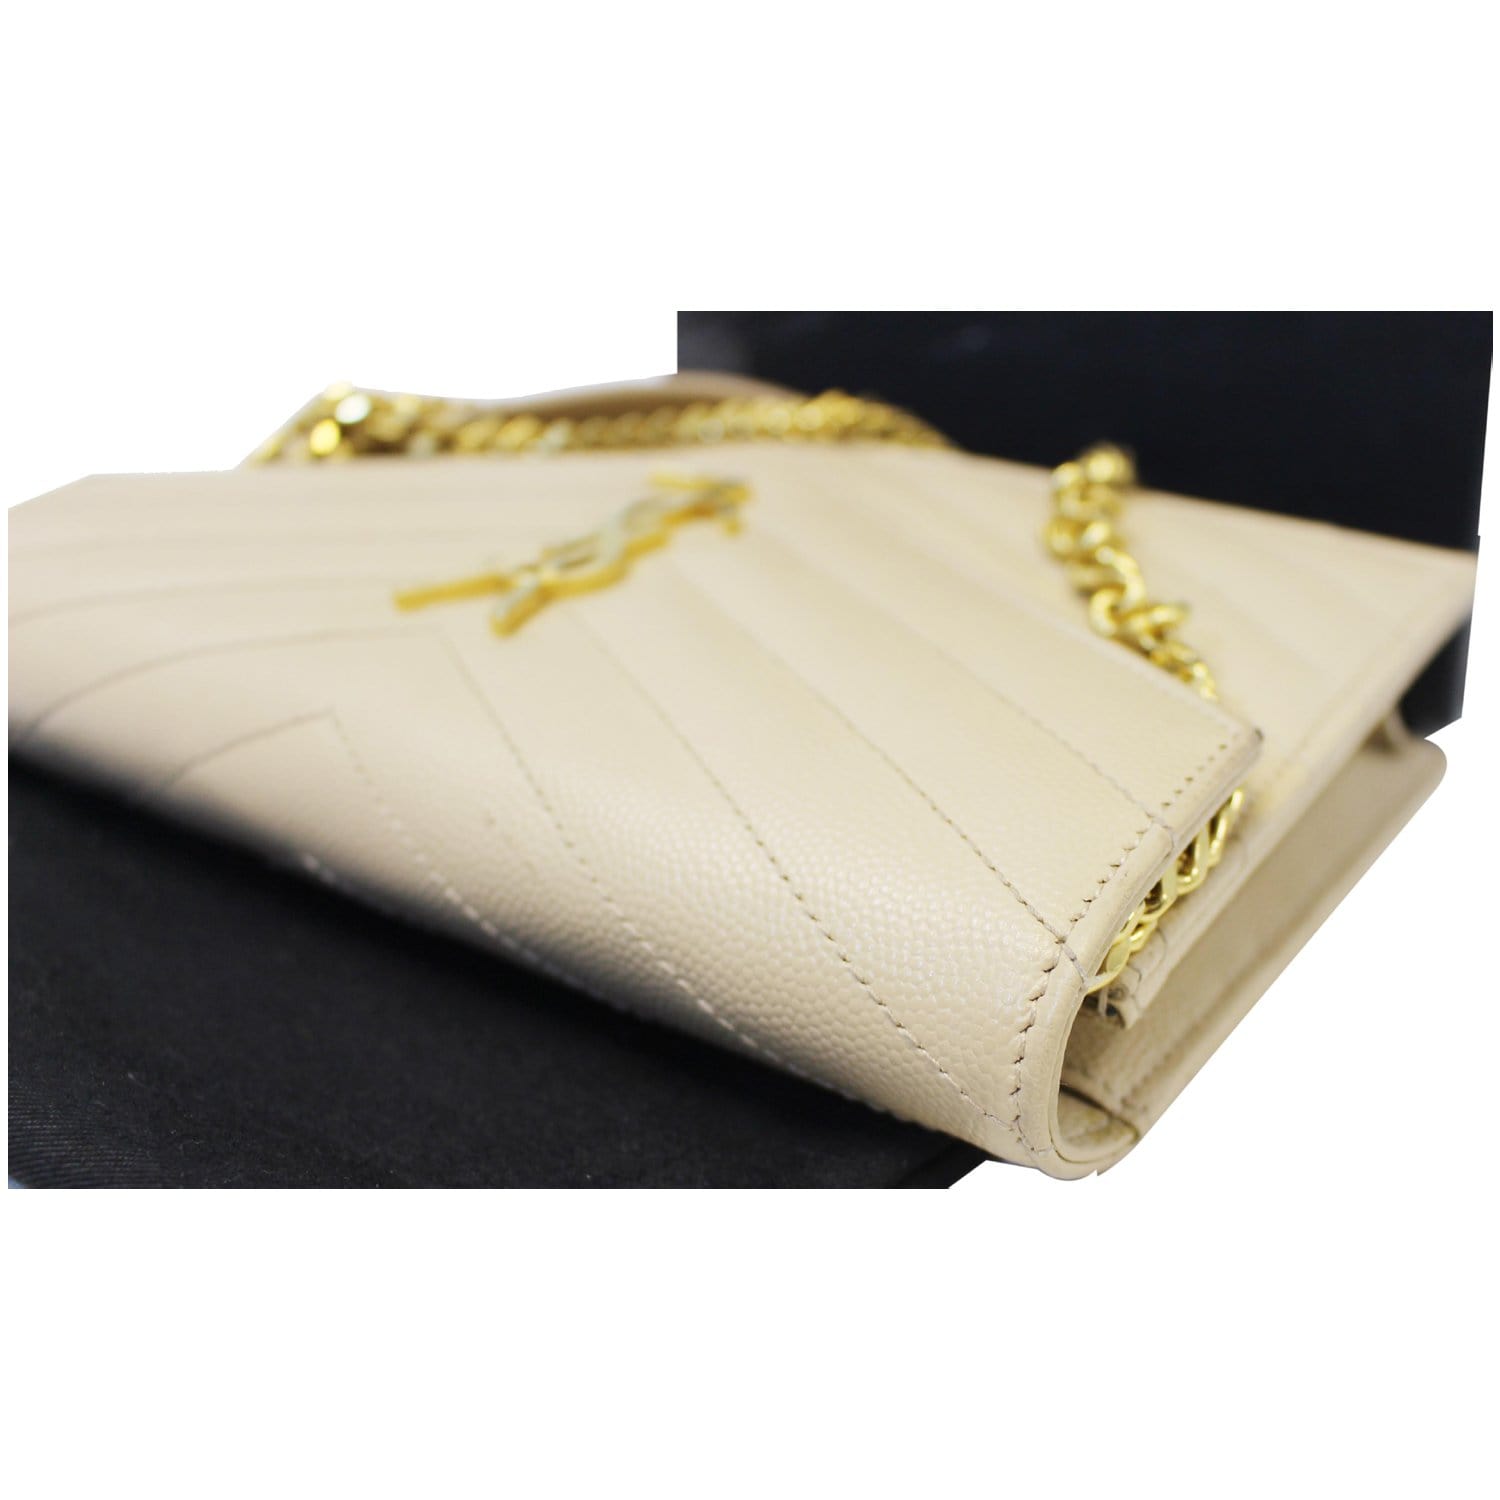 SAINT LAURENT: Monogram envelope chain wallet bag in grain de poudre  leather - Yellow Cream